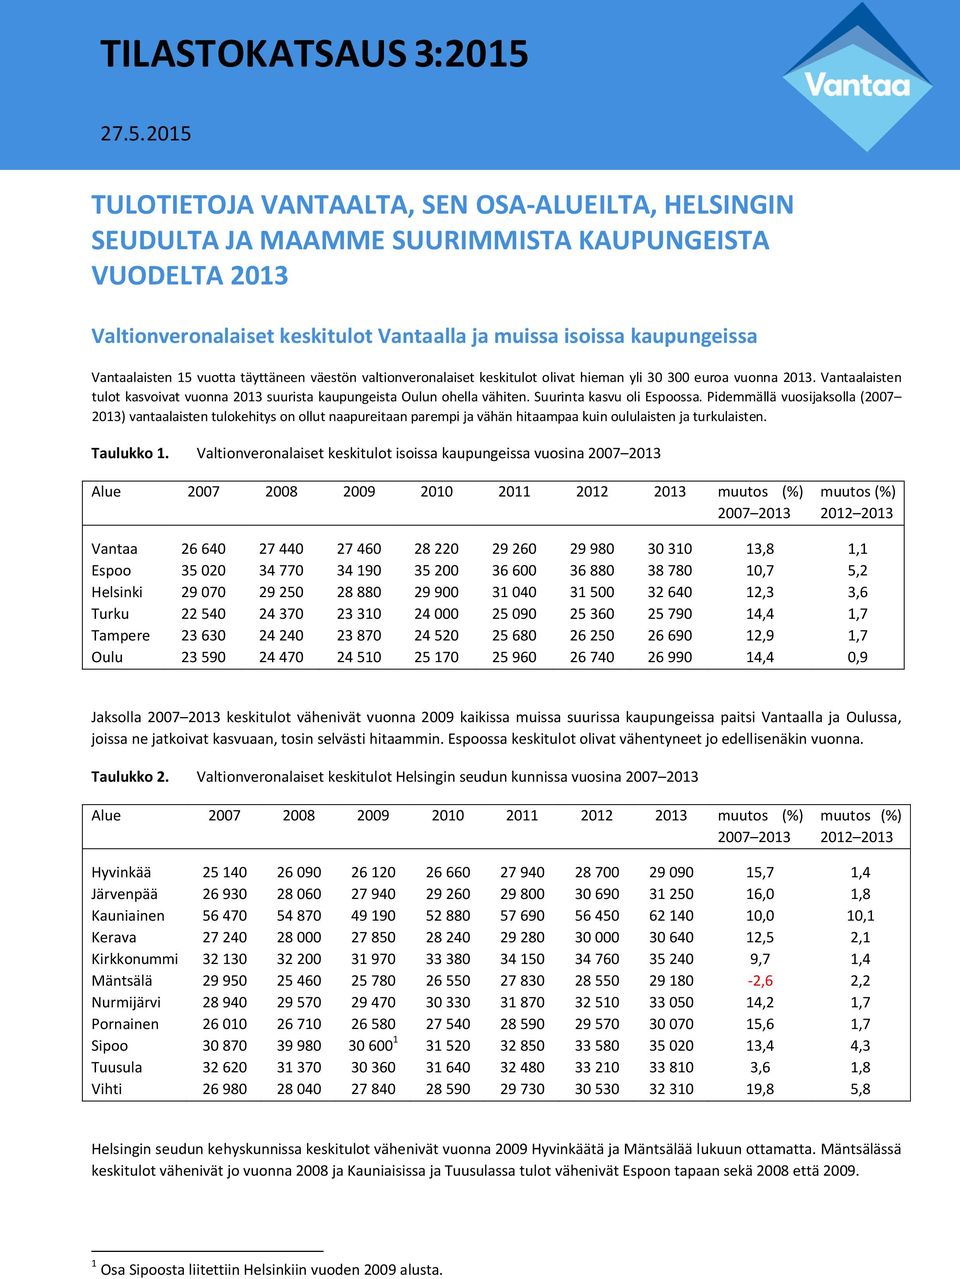 Vantaalaisten 15 vuotta täyttäneen väestön valtionveronalaiset keskitulot olivat hieman yli 30 300 euroa vuonna 2013.